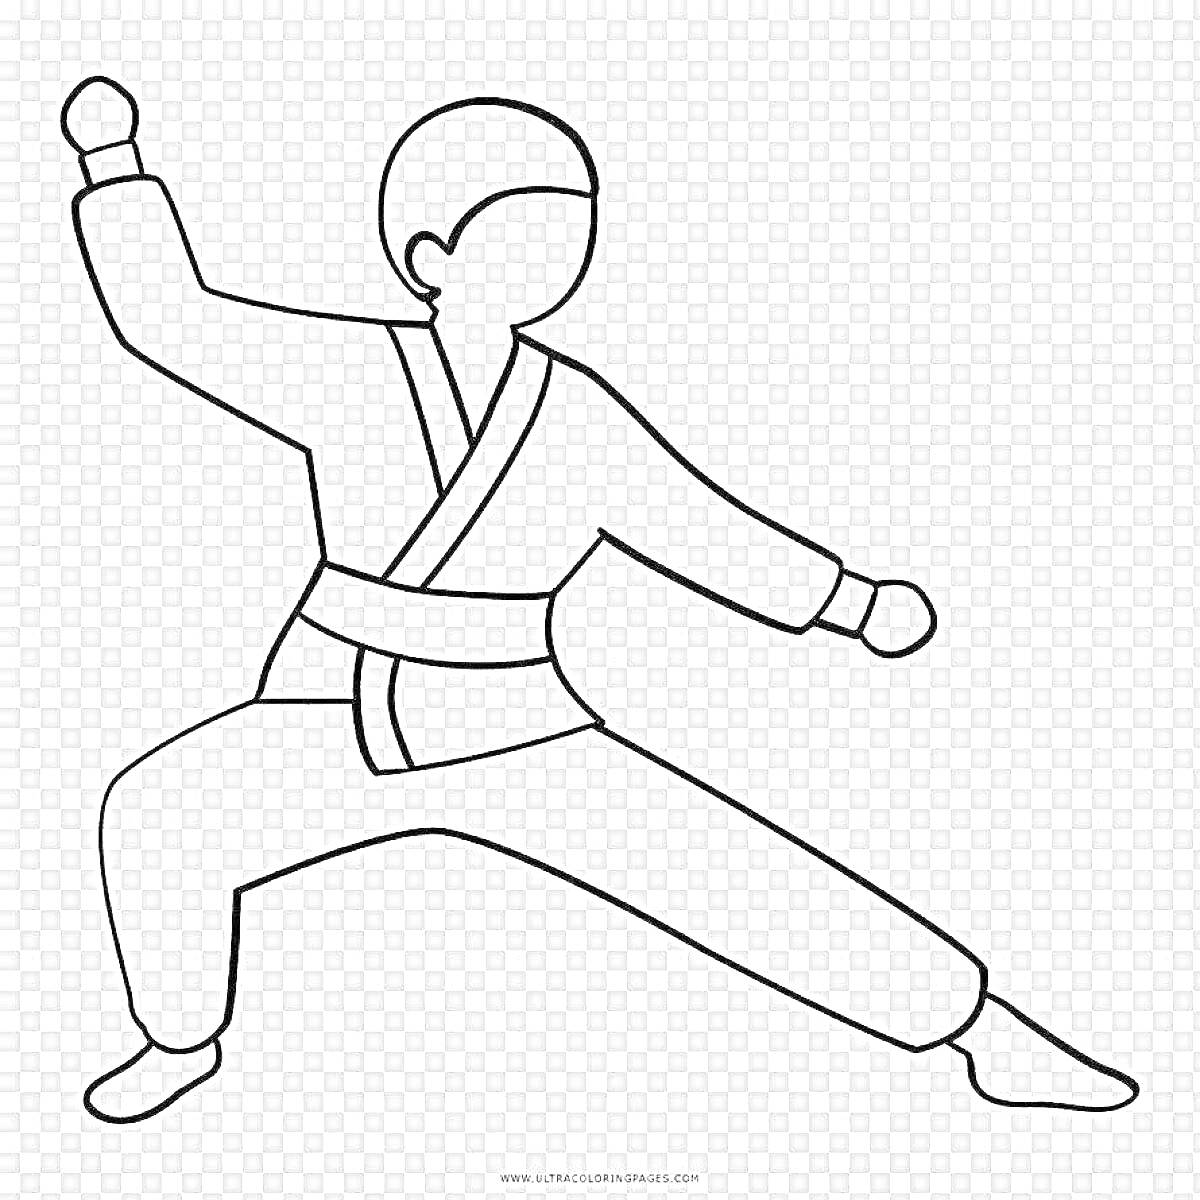  Дзюдоист в атакующей стойке с поднятой рукой и согнутыми ногами